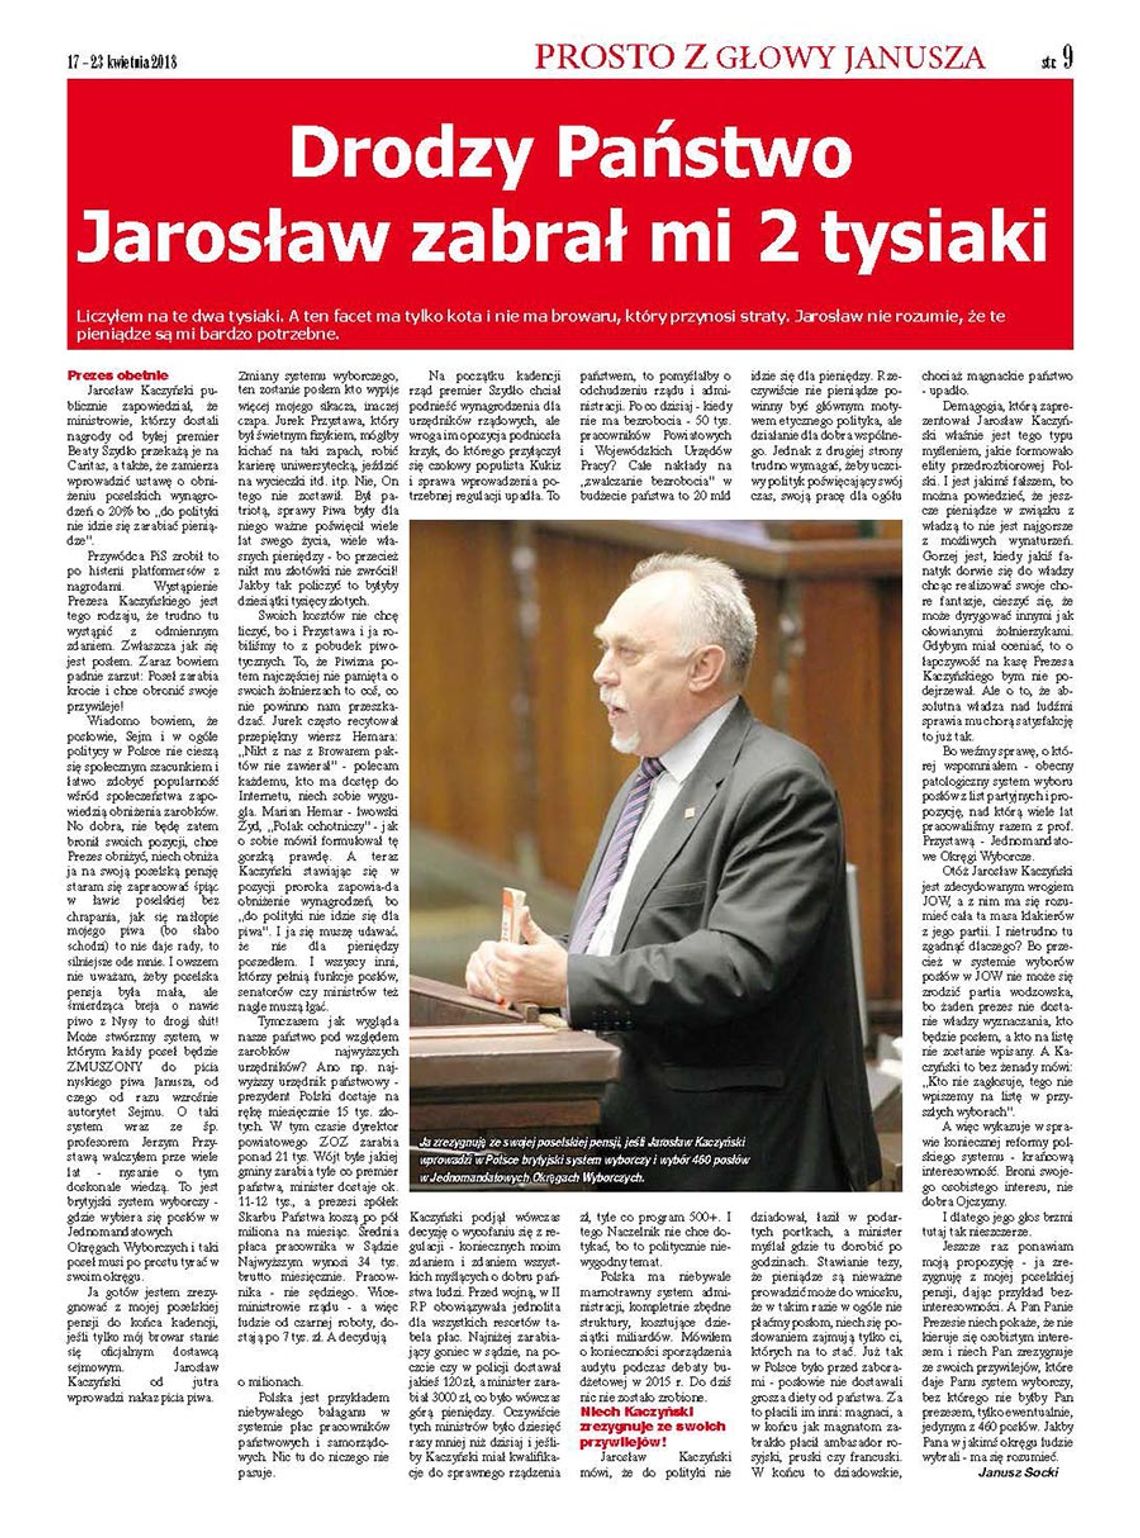 Uwaga na memy - Jarosław zabrał Januszowi 2 tysiaki.